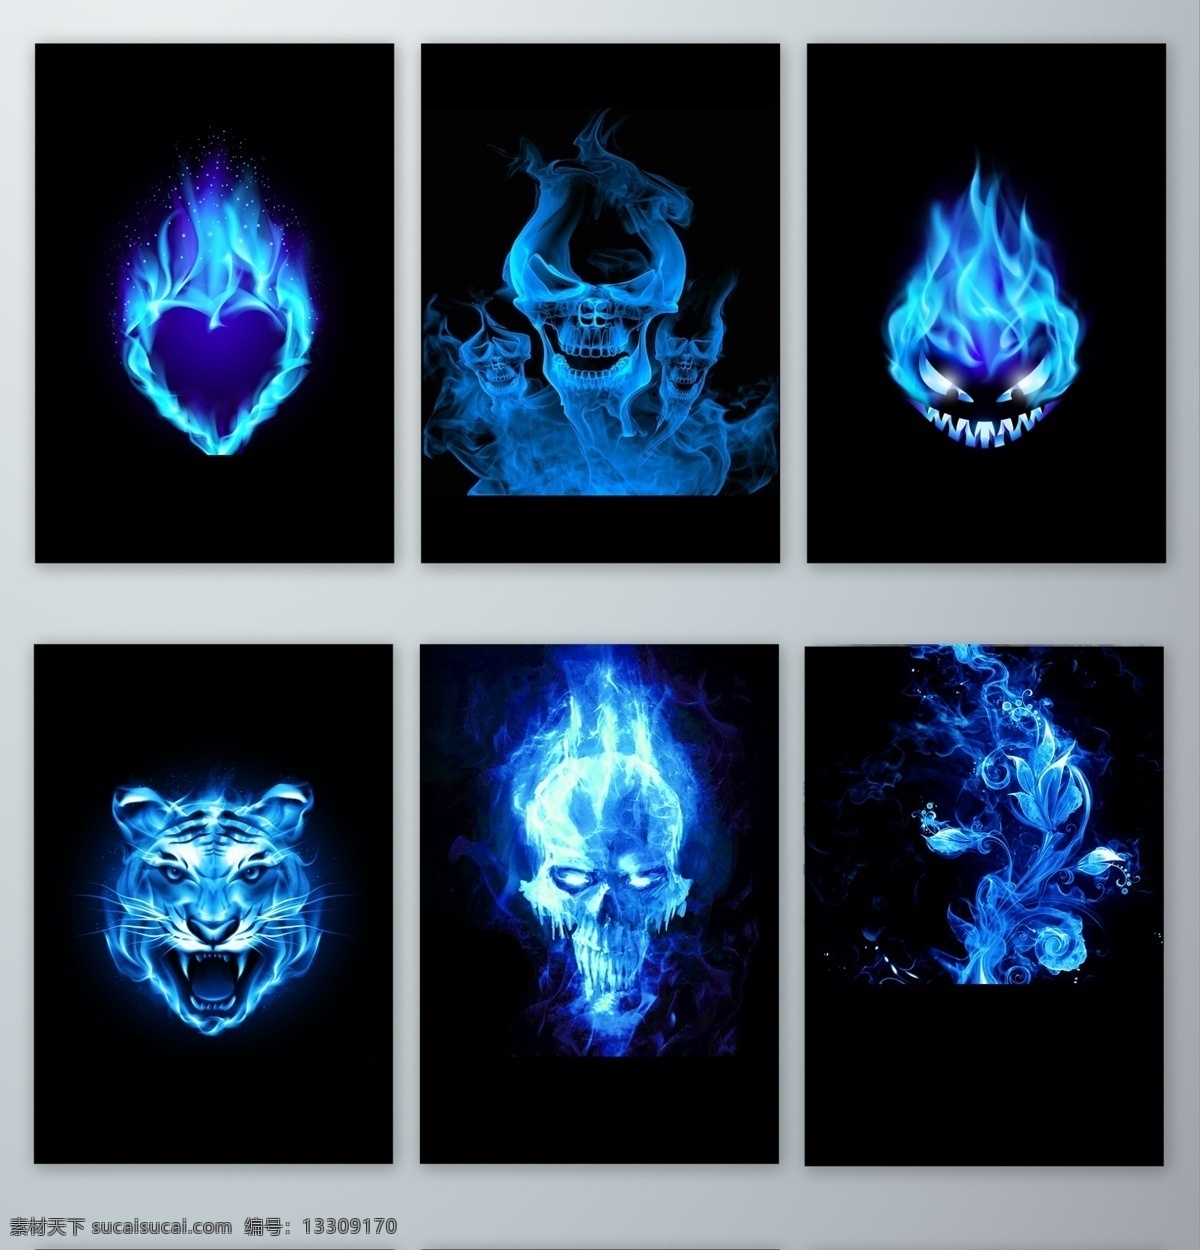 蓝色 火焰 物体 效果 元素 蓝色火焰物体 蓝色火焰效果 蓝色火焰元素 火 烈火 熊熊火焰 燃烧的 火苗 火焰效果 效果元素 装饰 设计素材 免抠图 无背景 透明 可怕的 骷颅 老虎 头 花 分层